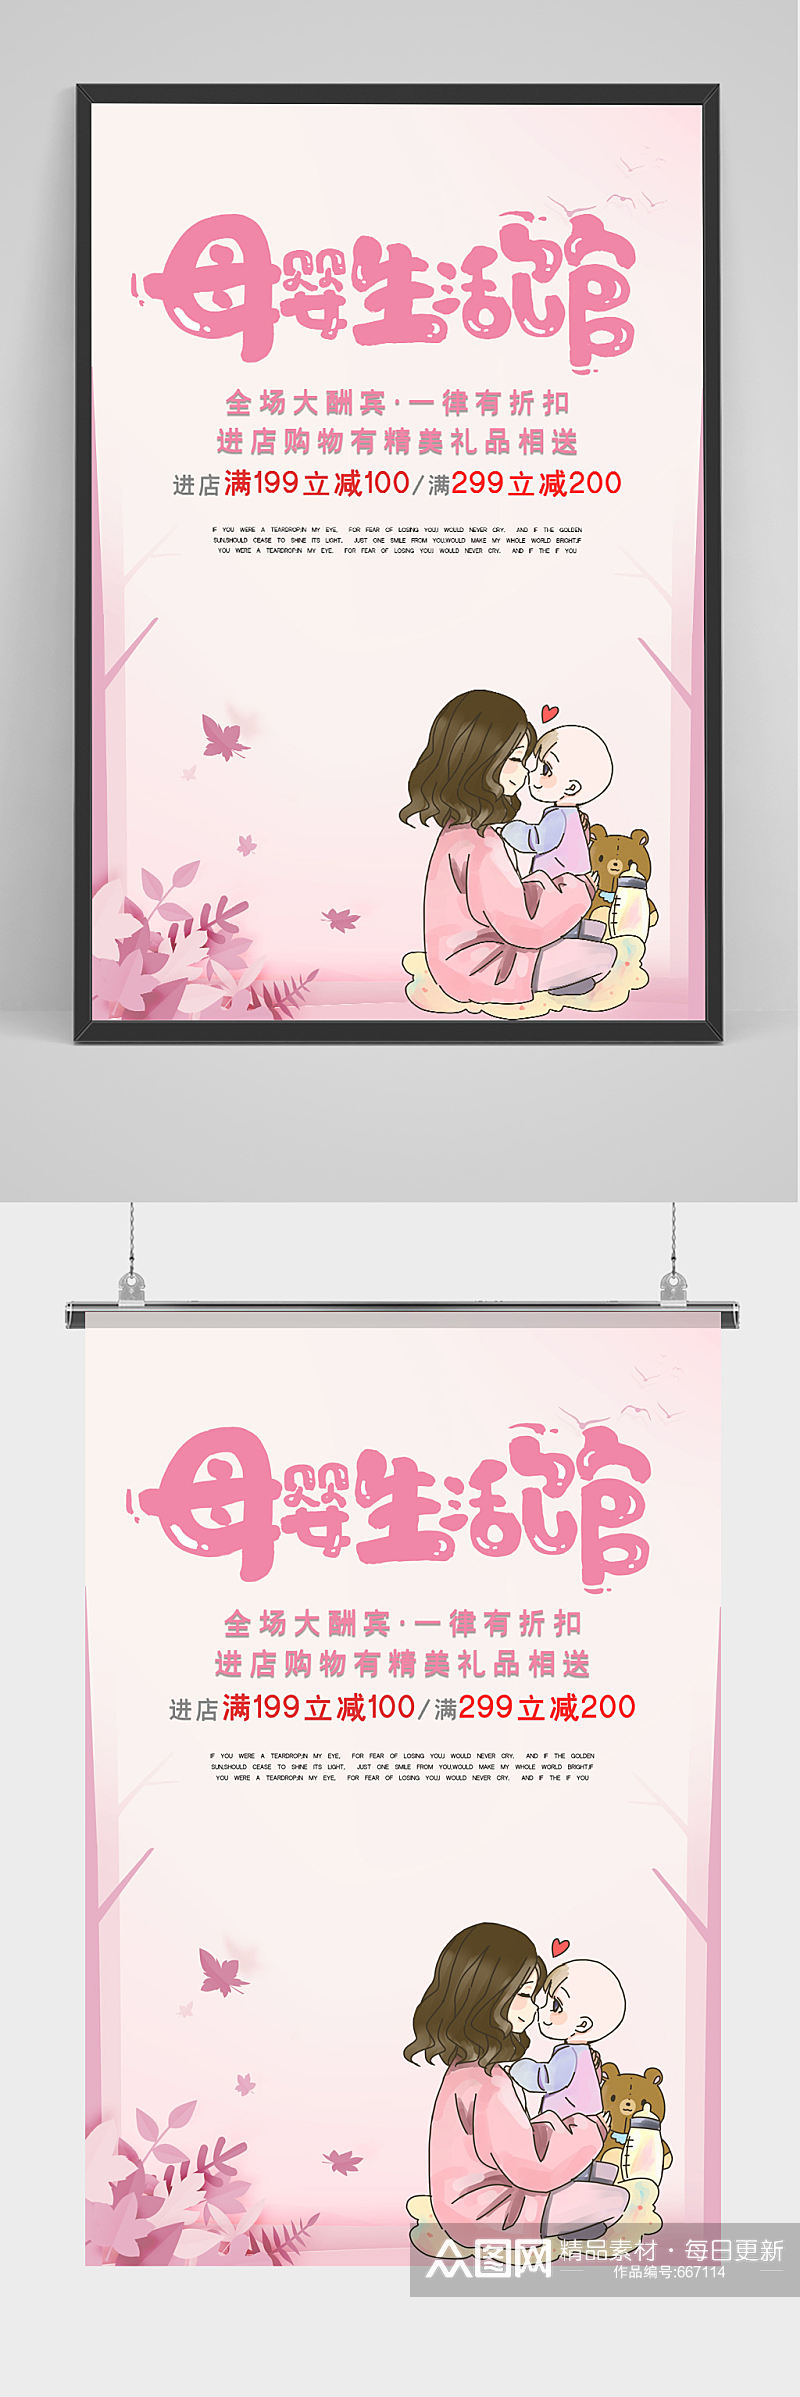 粉色温馨手绘母婴生活馆母婴用品创意海报素材